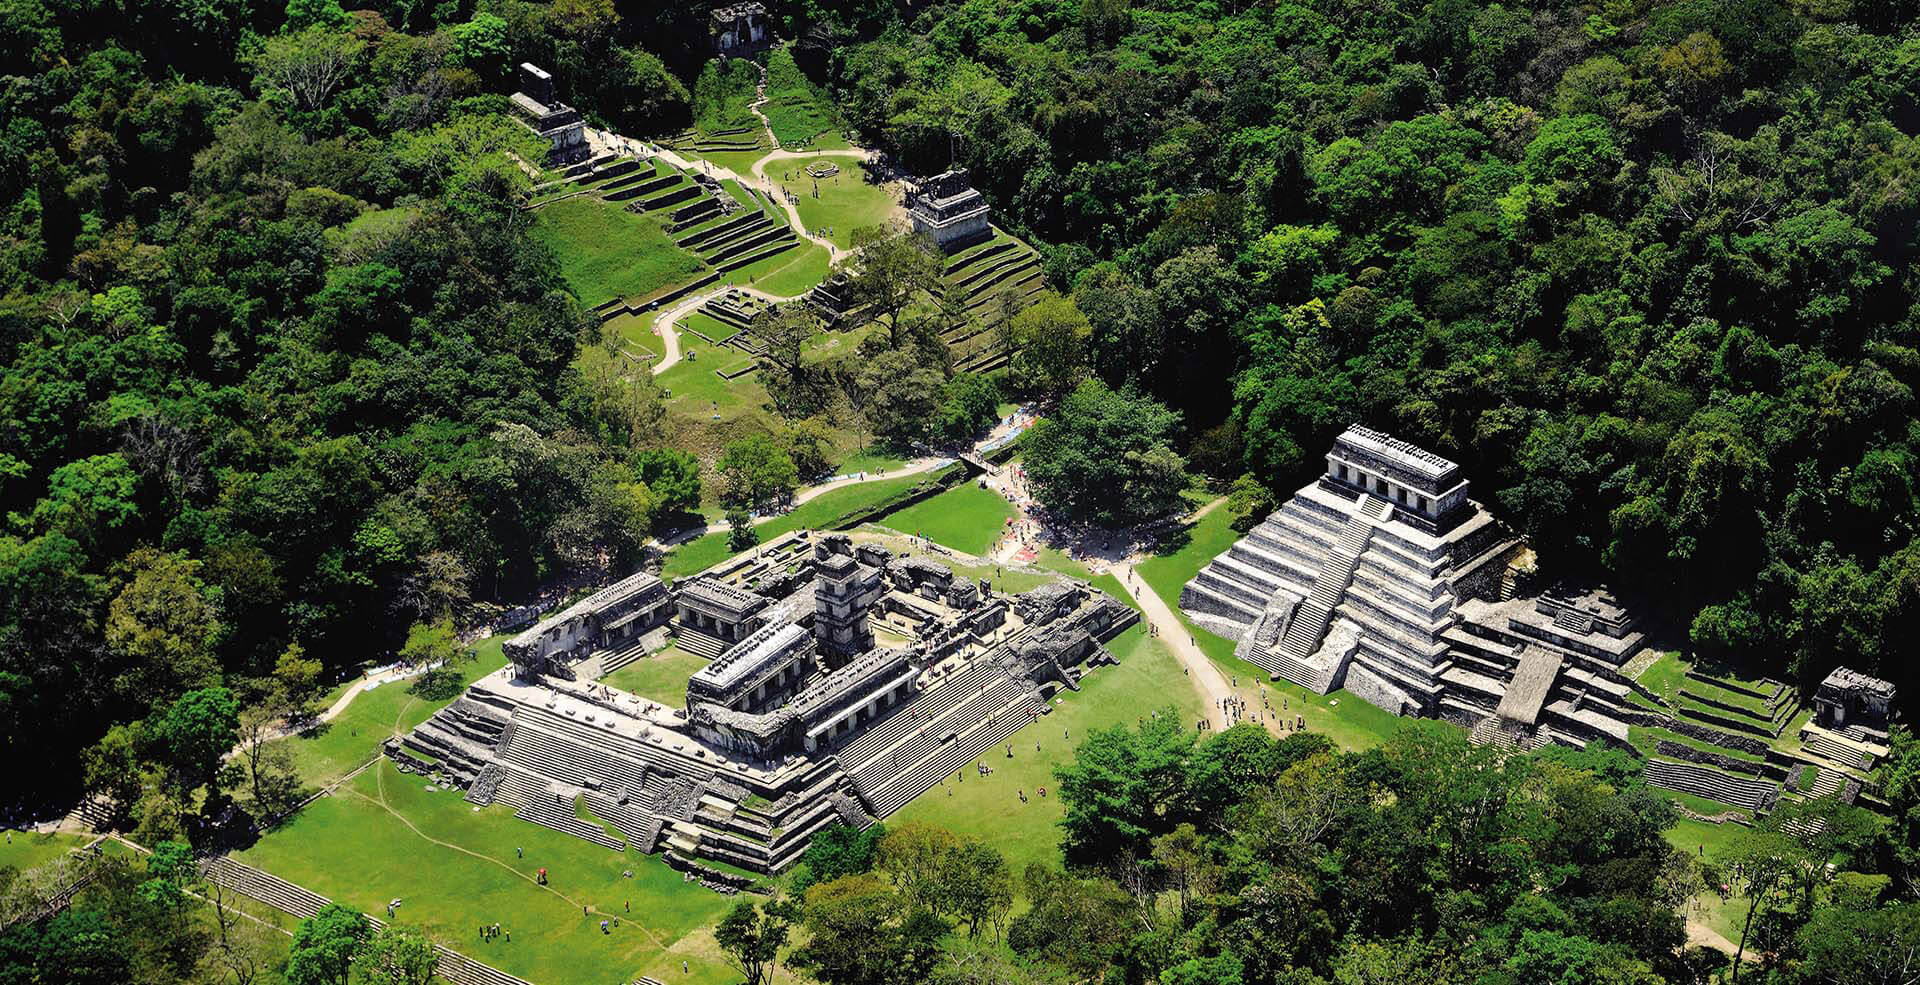 Palenque1